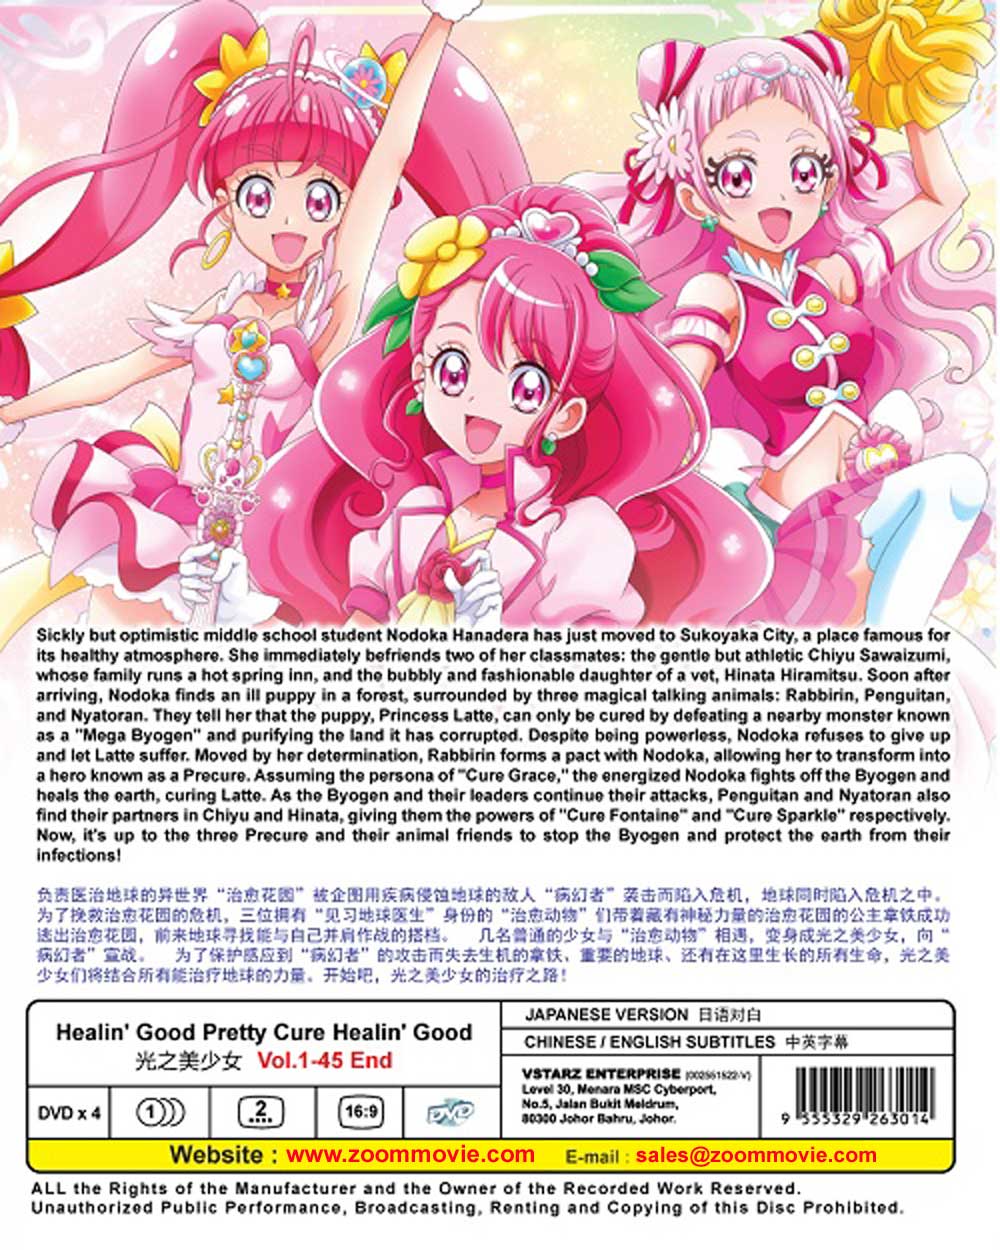 Healin Good Pretty Cure Dvd 2020 2021 Anime Ep 1 45 End English Sub 1397